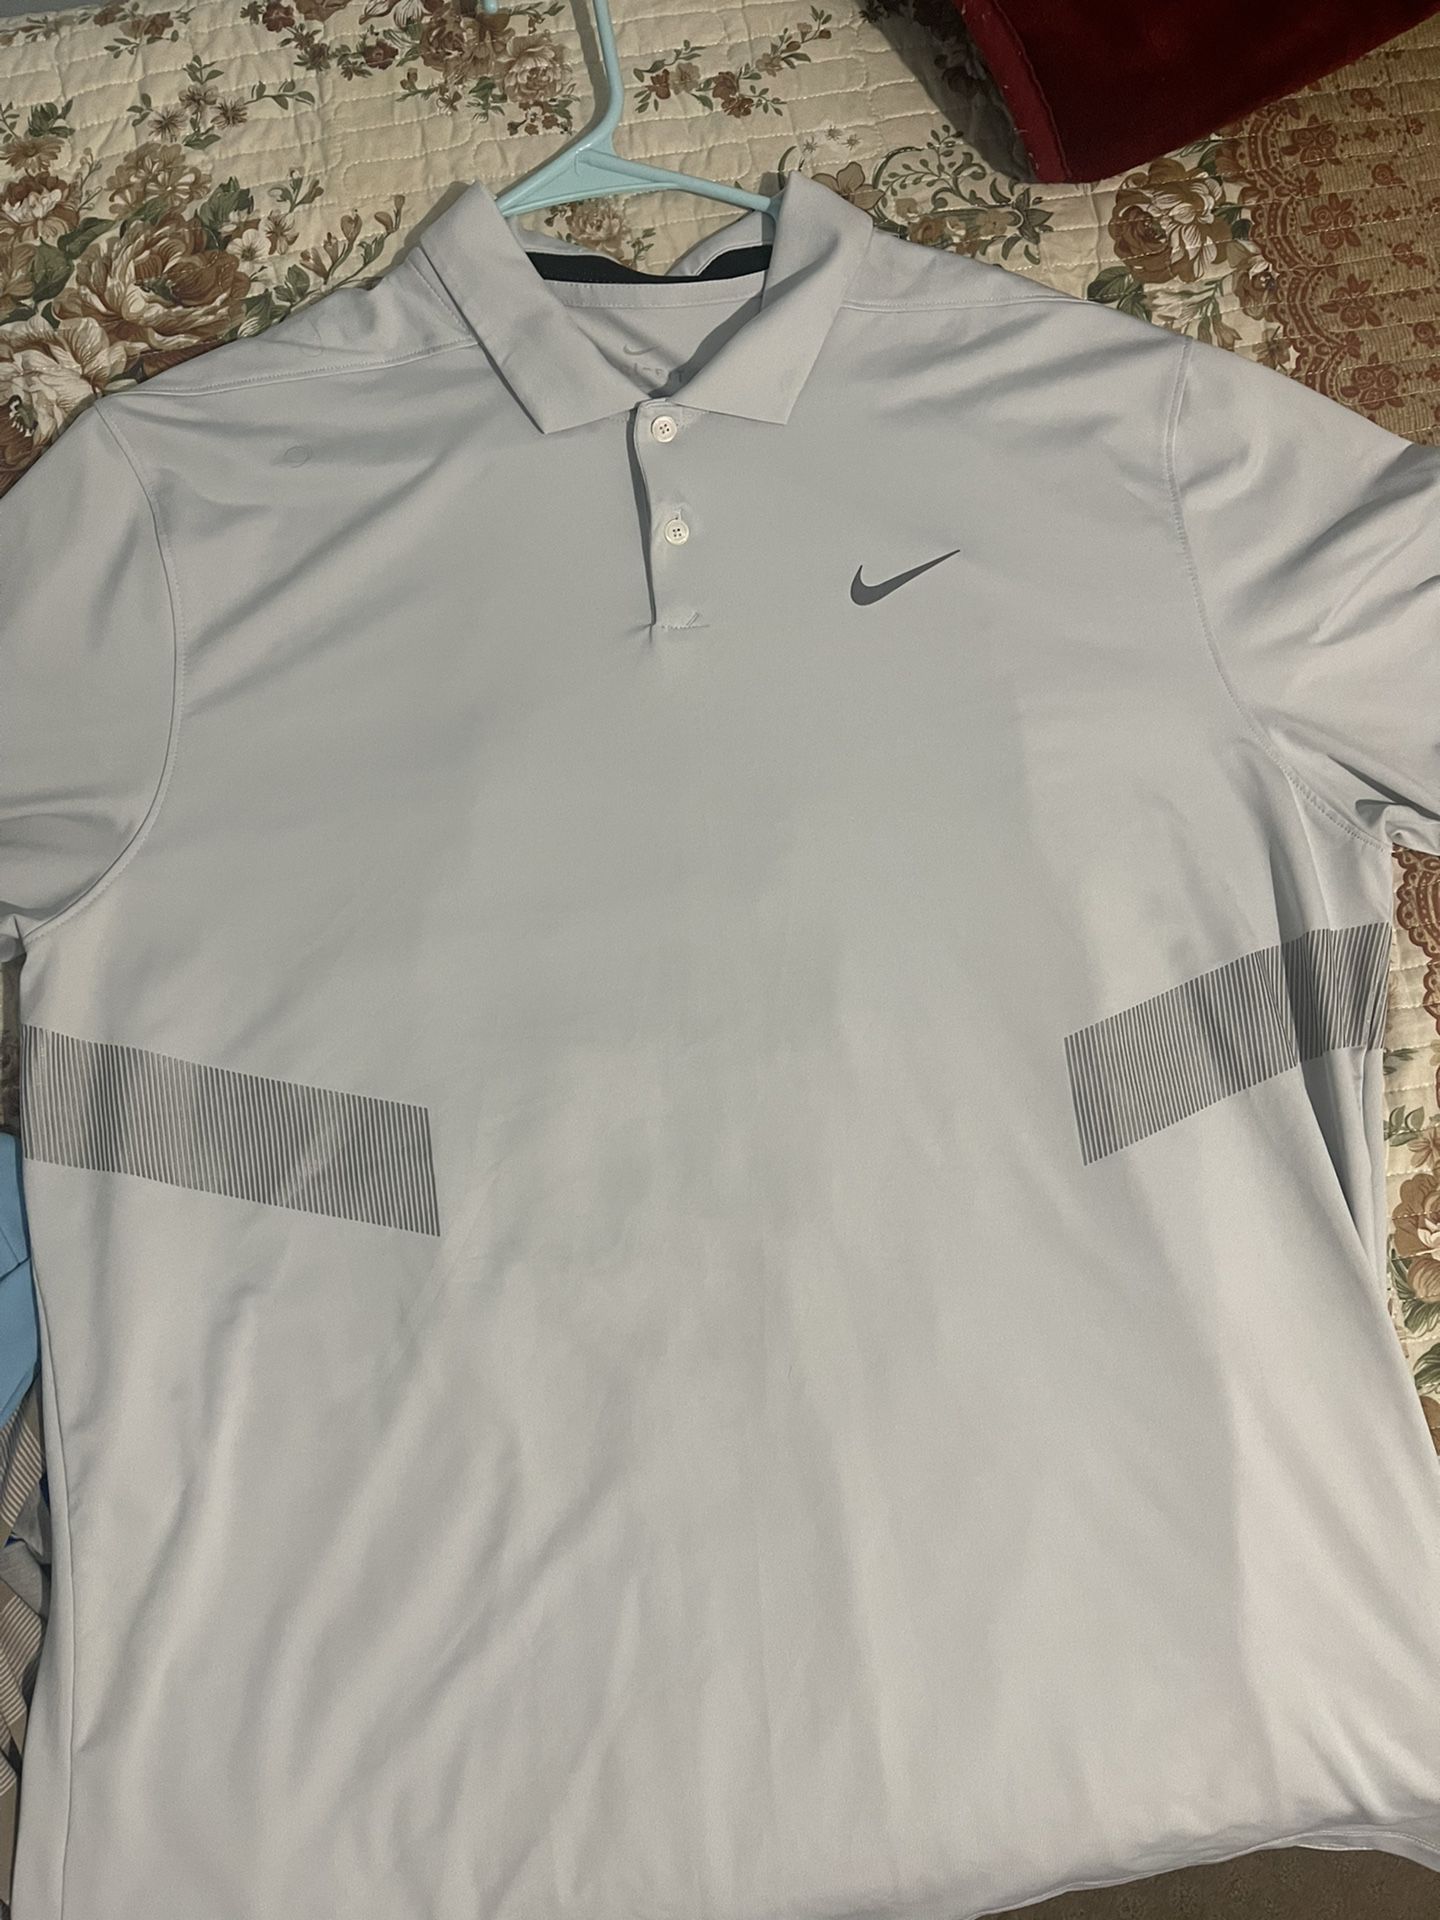 7 XL Golf Shirts